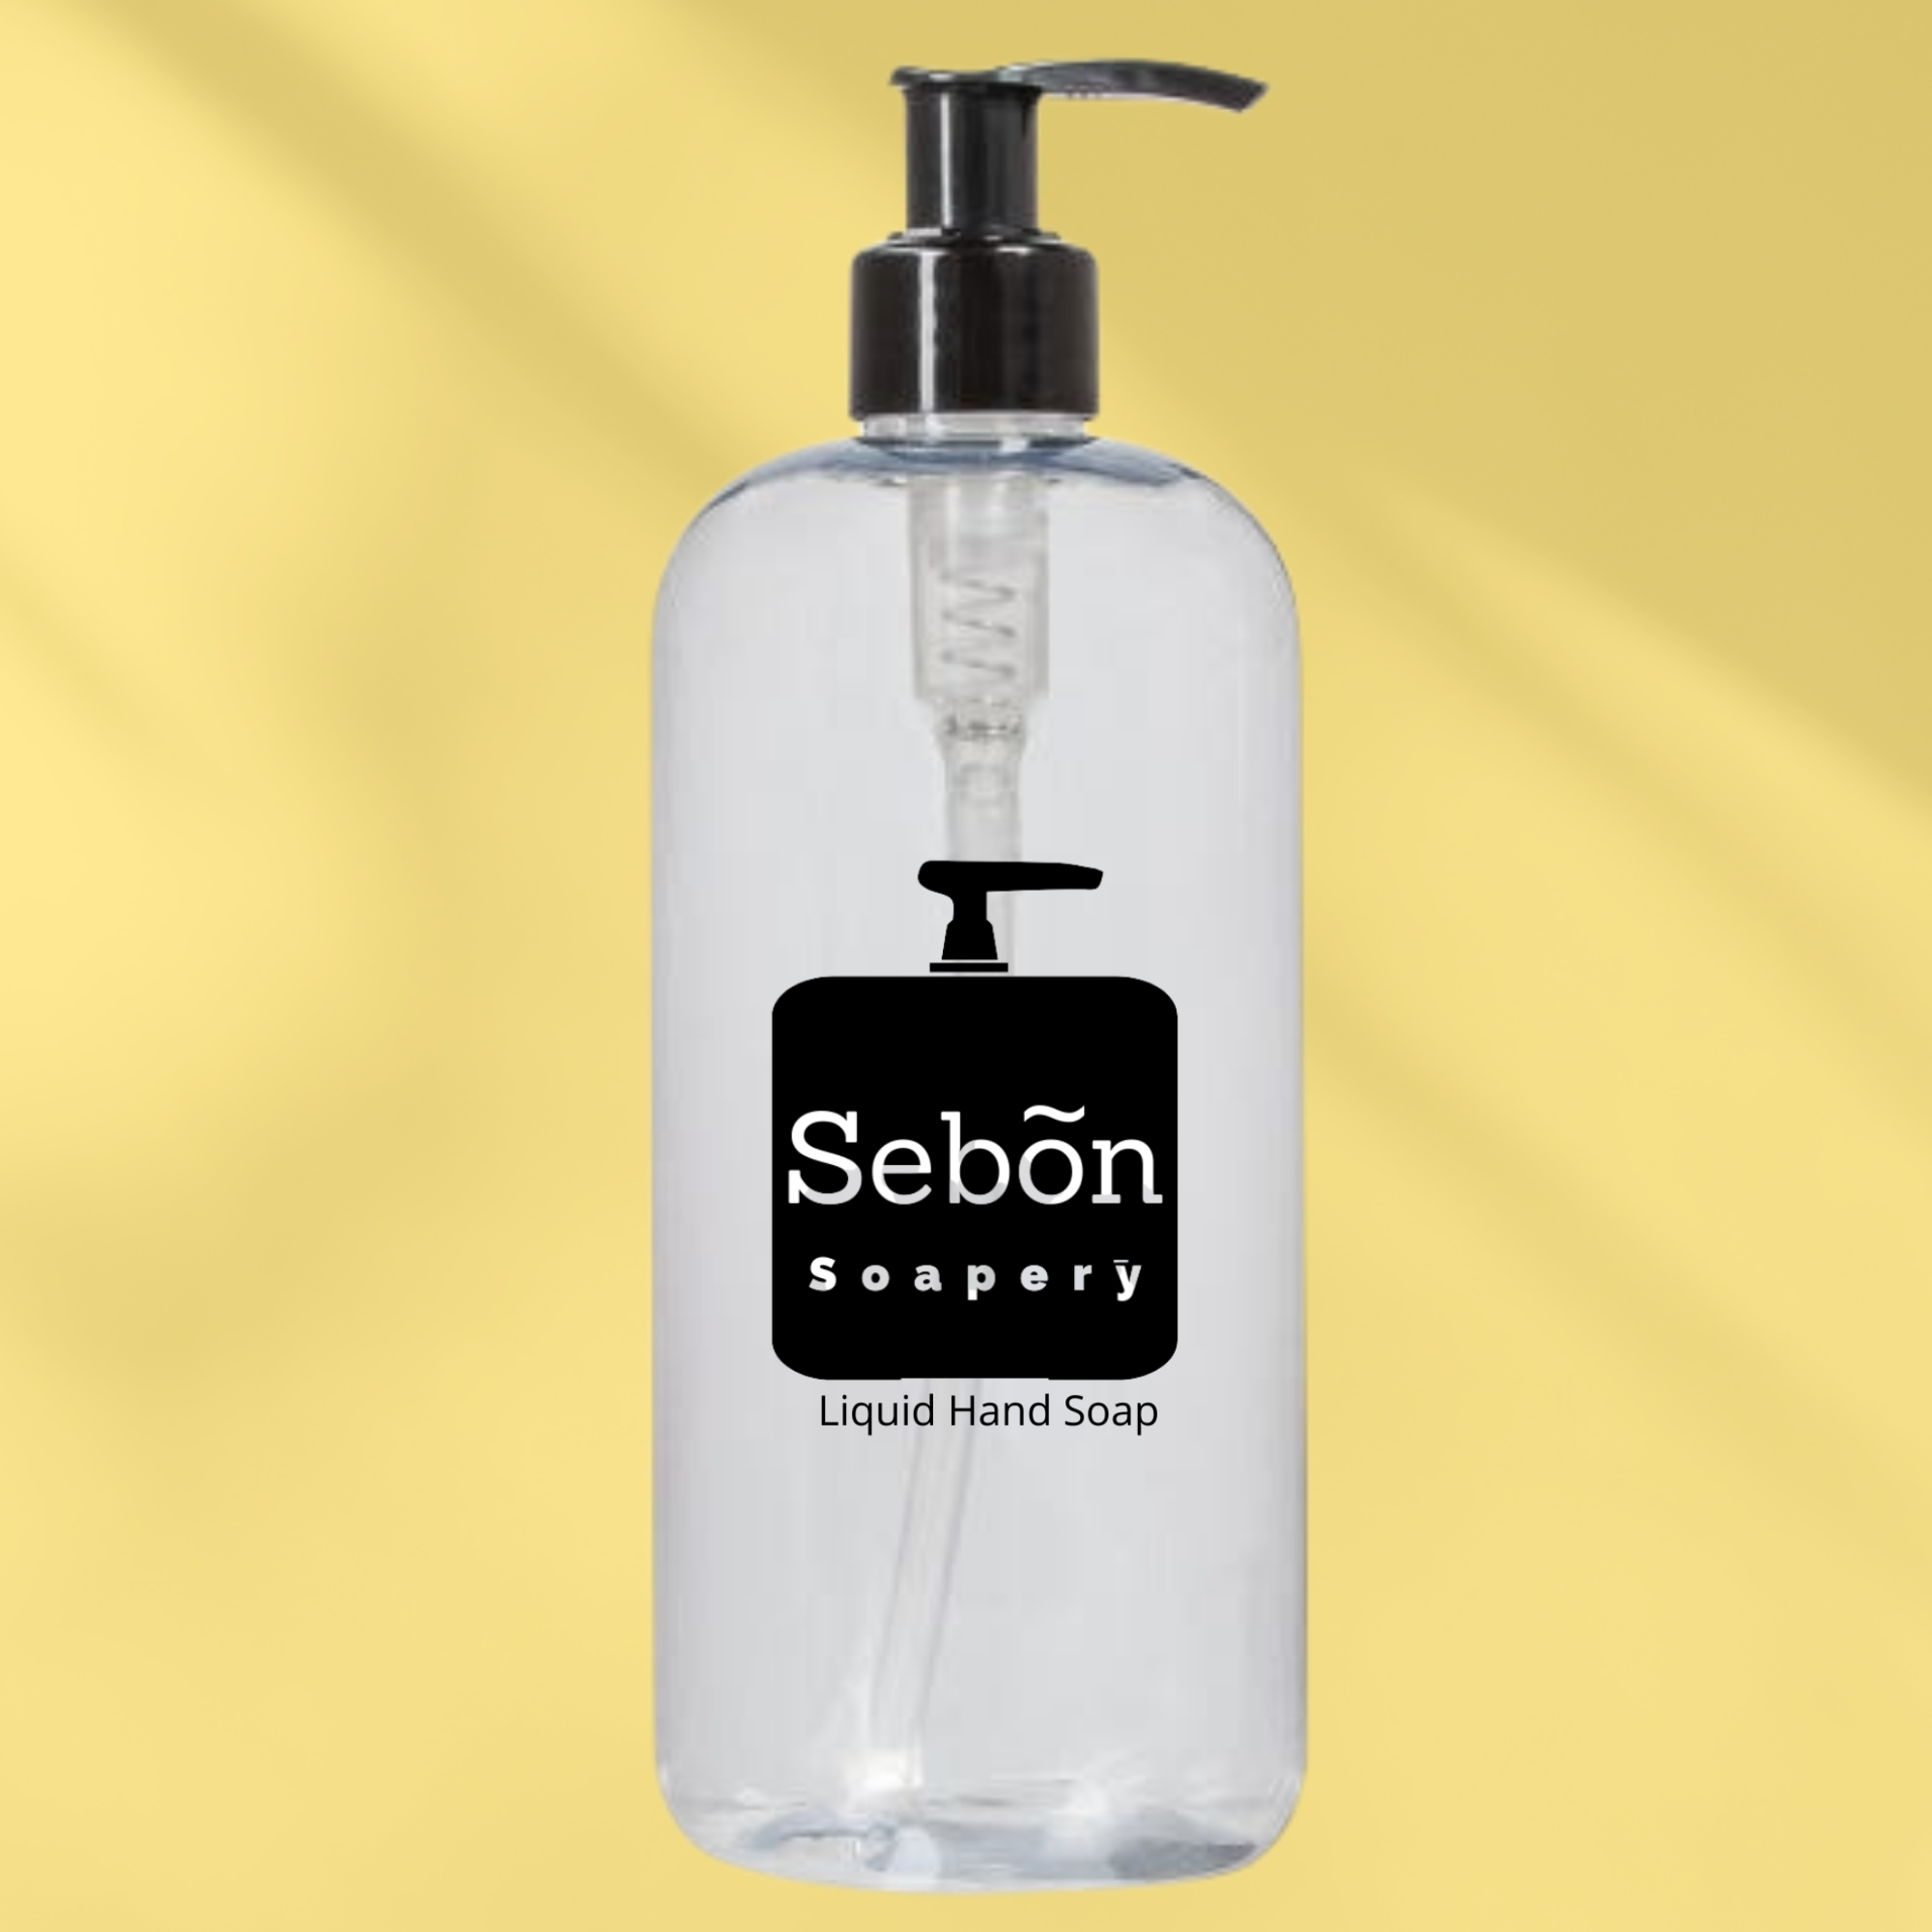 Sebon Vanilla Almond Scented Liquid Hand Soap with Olive Oil